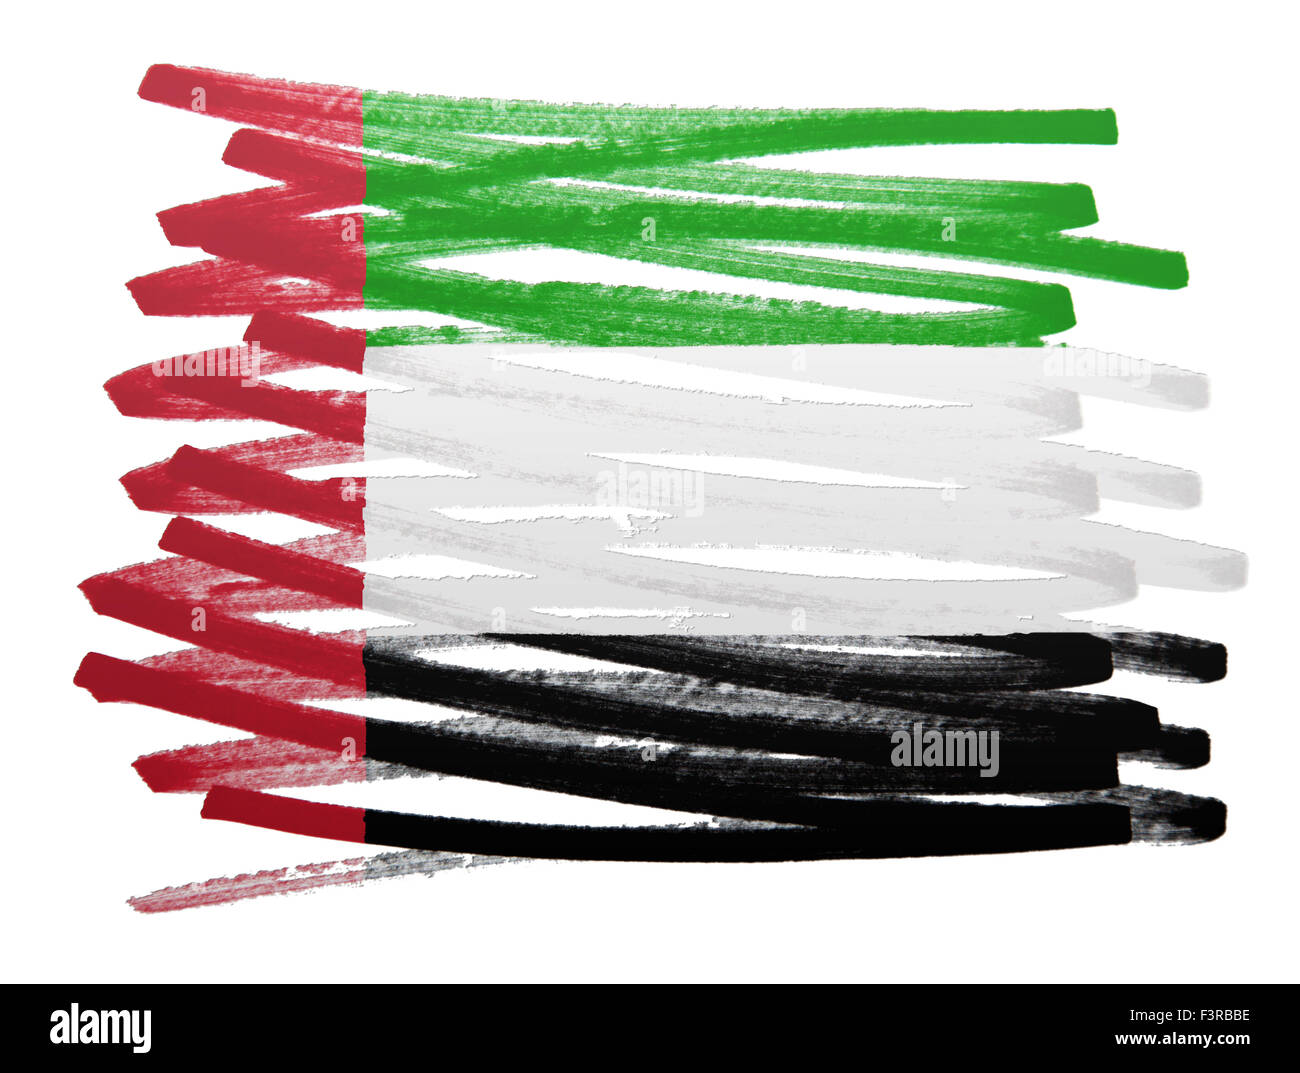 Flag illustration réalisée avec stylo - Emirats Arabes Unis Banque D'Images